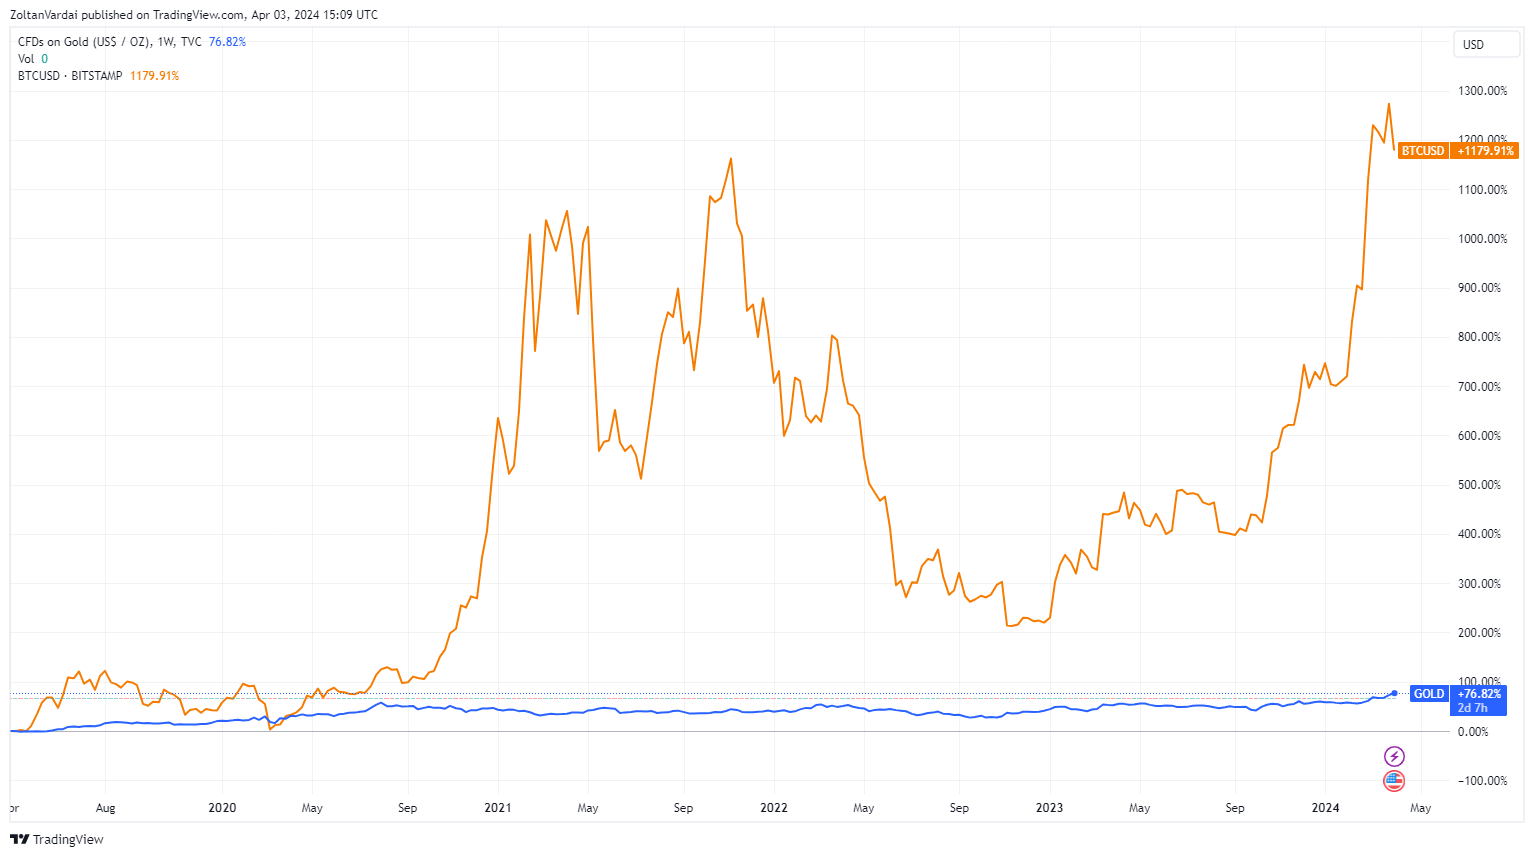 Mục tiêu giá của Bitcoin sau cắt nửa vào năm 2028 là 435k, dữ liệu lịch sử cho thấy